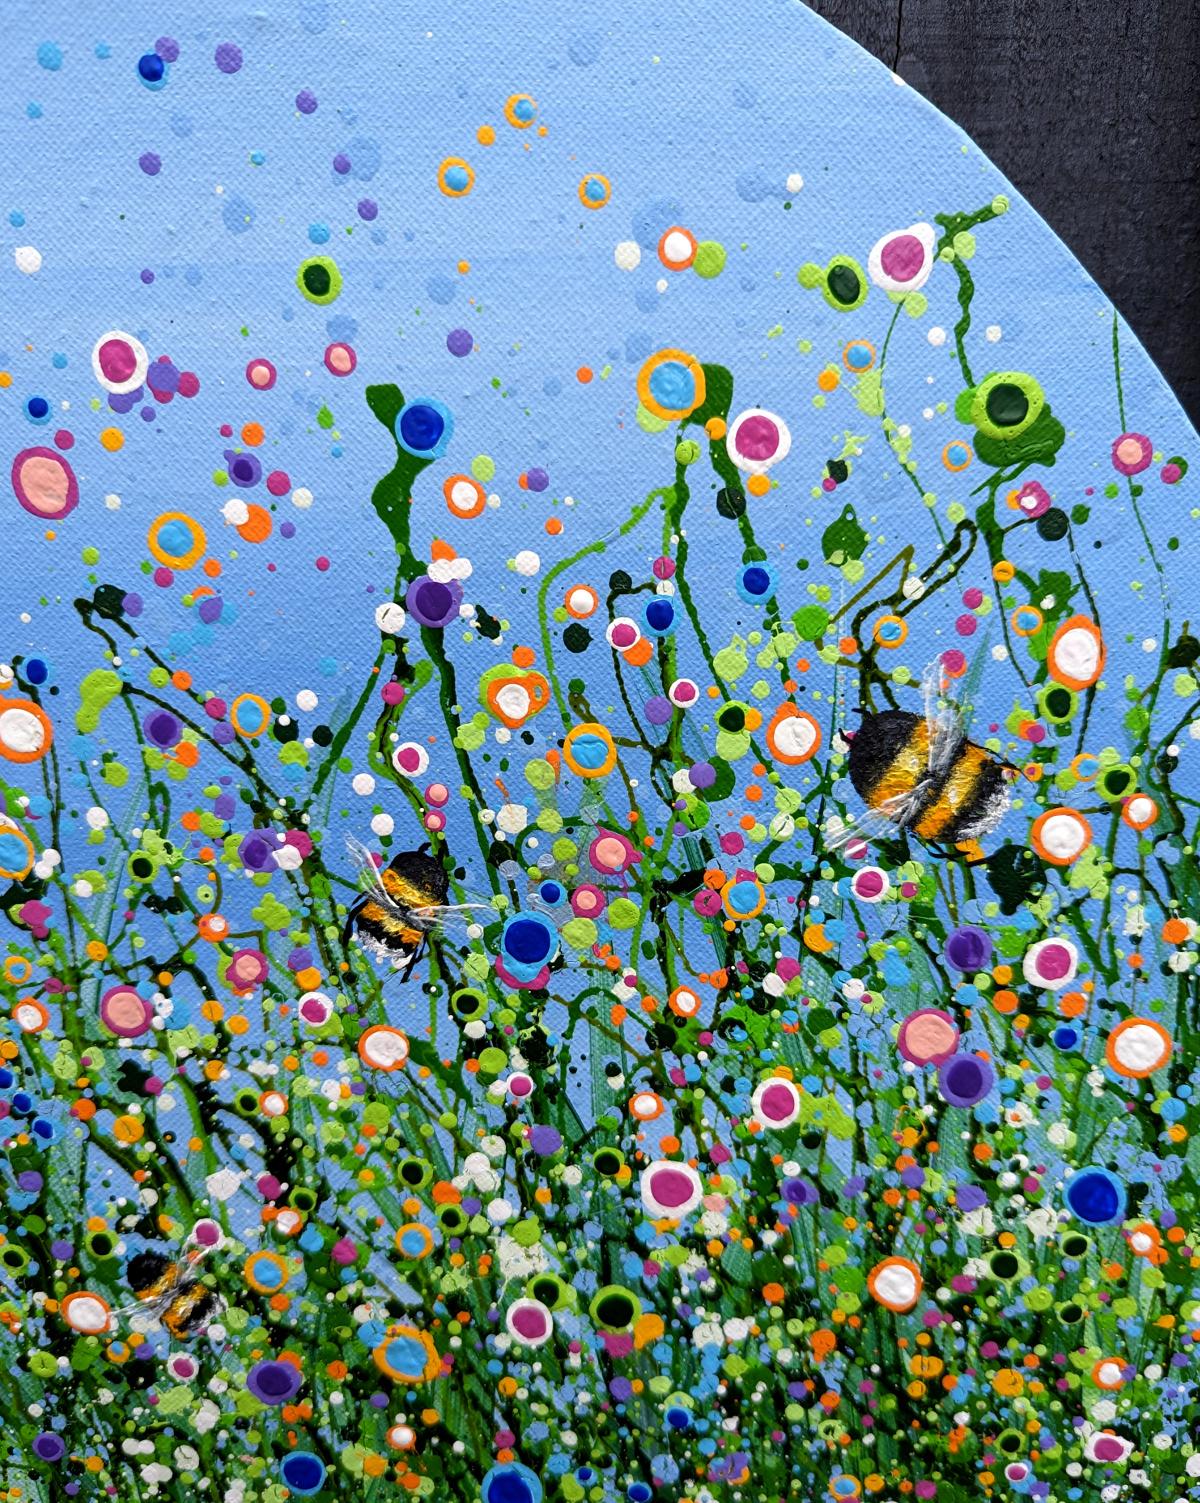 Wildes Chaos - Mit ein wenig Textur habe ich diese fröhliche Blüte mit kleinen Bienen geschaffen, die ihrem Tag nachgehen. Ich liebe es, mit Farben herumzuspritzen und wilde, abstrakte Blumenfelder zu malen. 40 x40 cm 1,5 cm dick Acryl auf runder